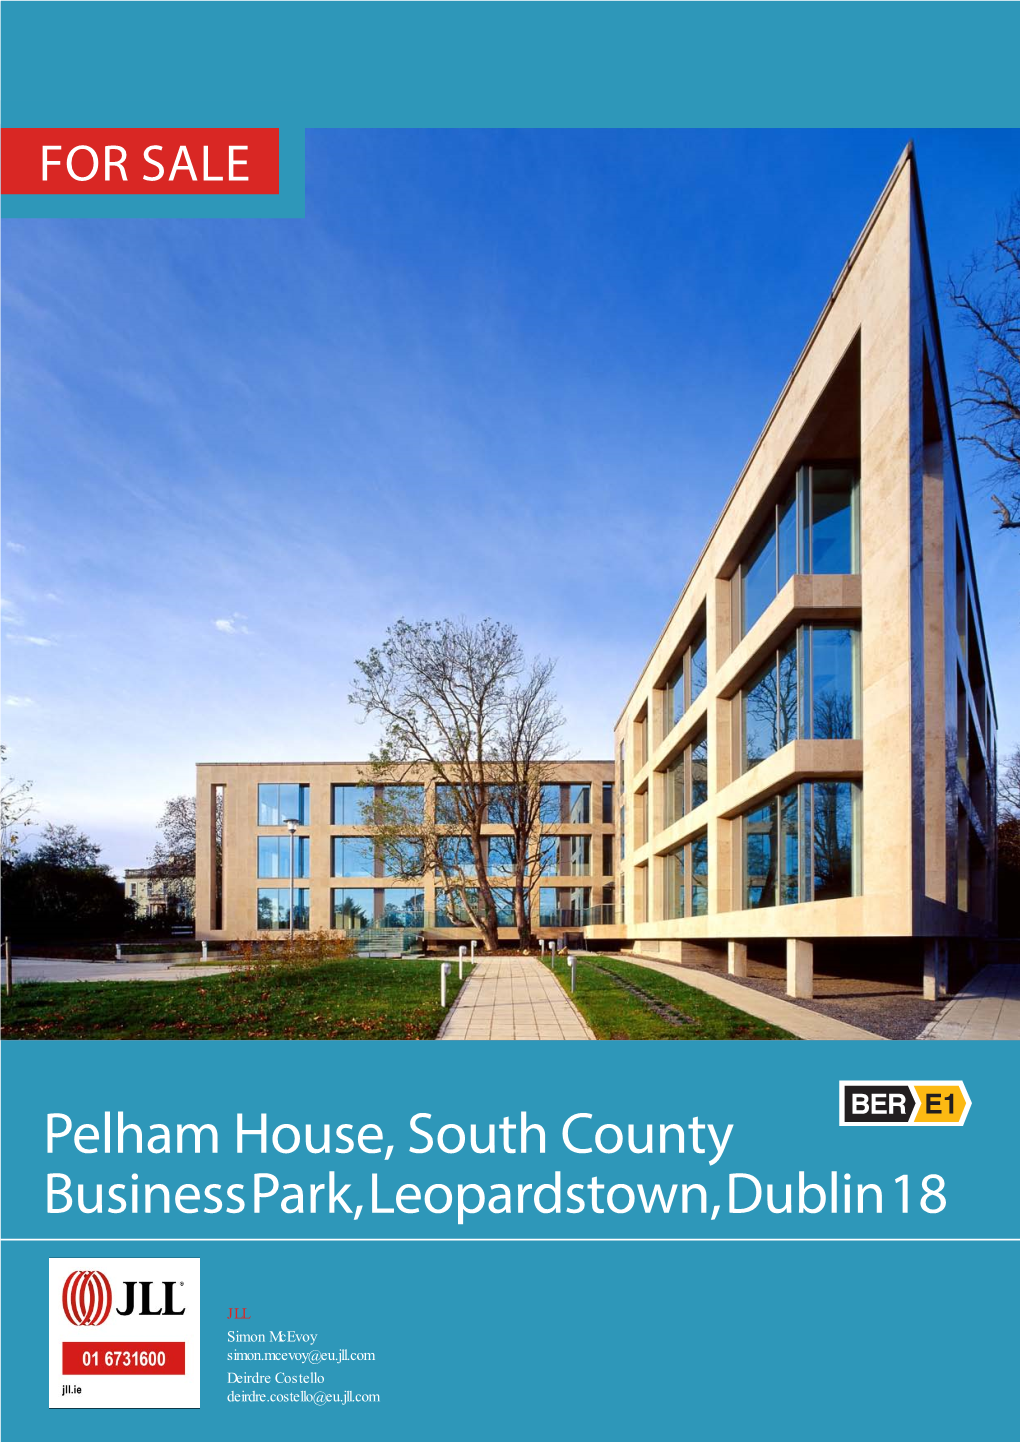 Pelham House, South County Business Park, Leopardstown, Dublin 18